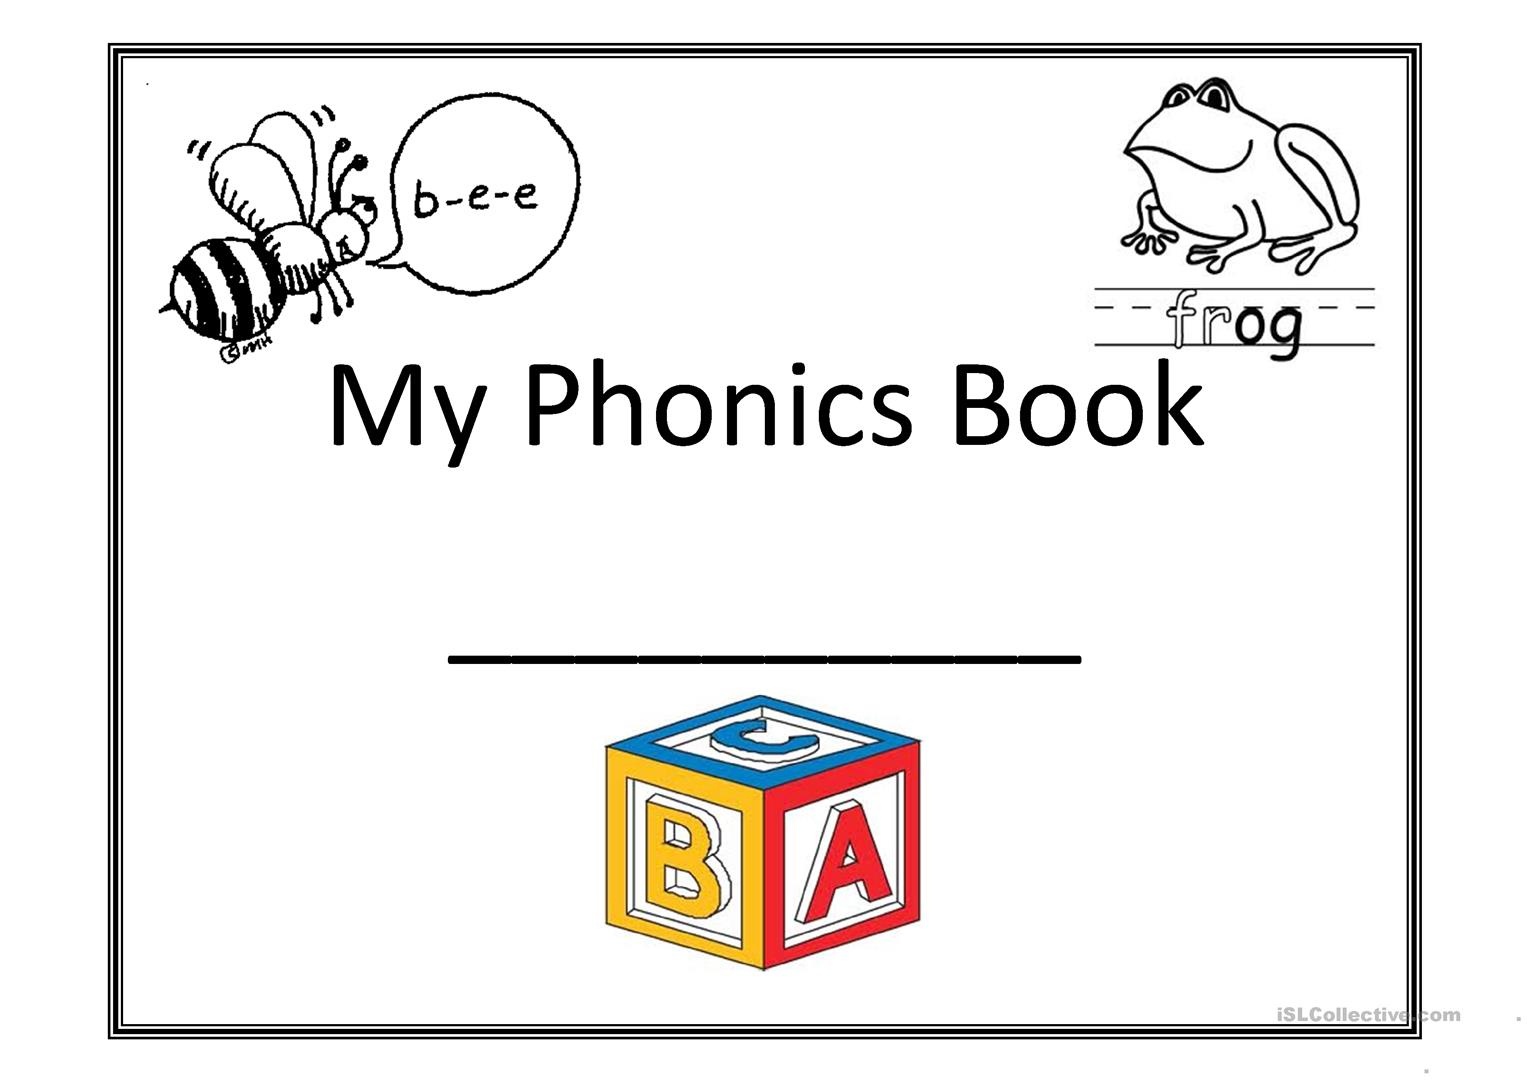 My Phonics Book Worksheet - Free Esl Printable Worksheets Made - Free Printable Phonics Books For Kindergarten